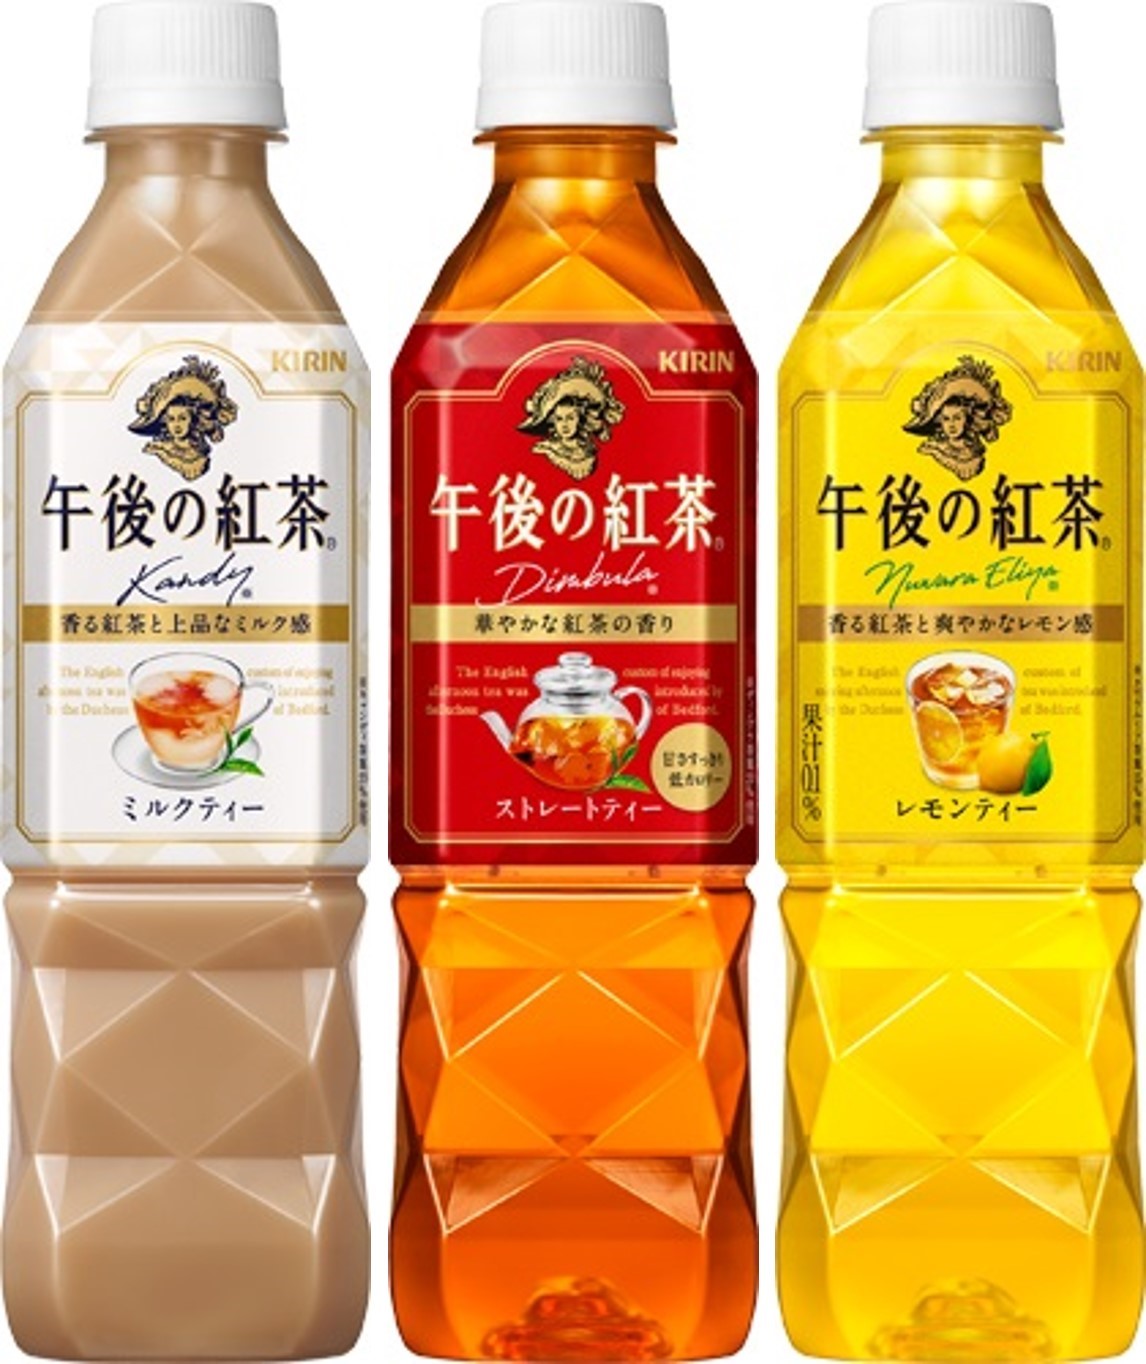 「キリン 午後の紅茶」ミルクティー/ストレートティー/レモンティー(500mlペットボトル)